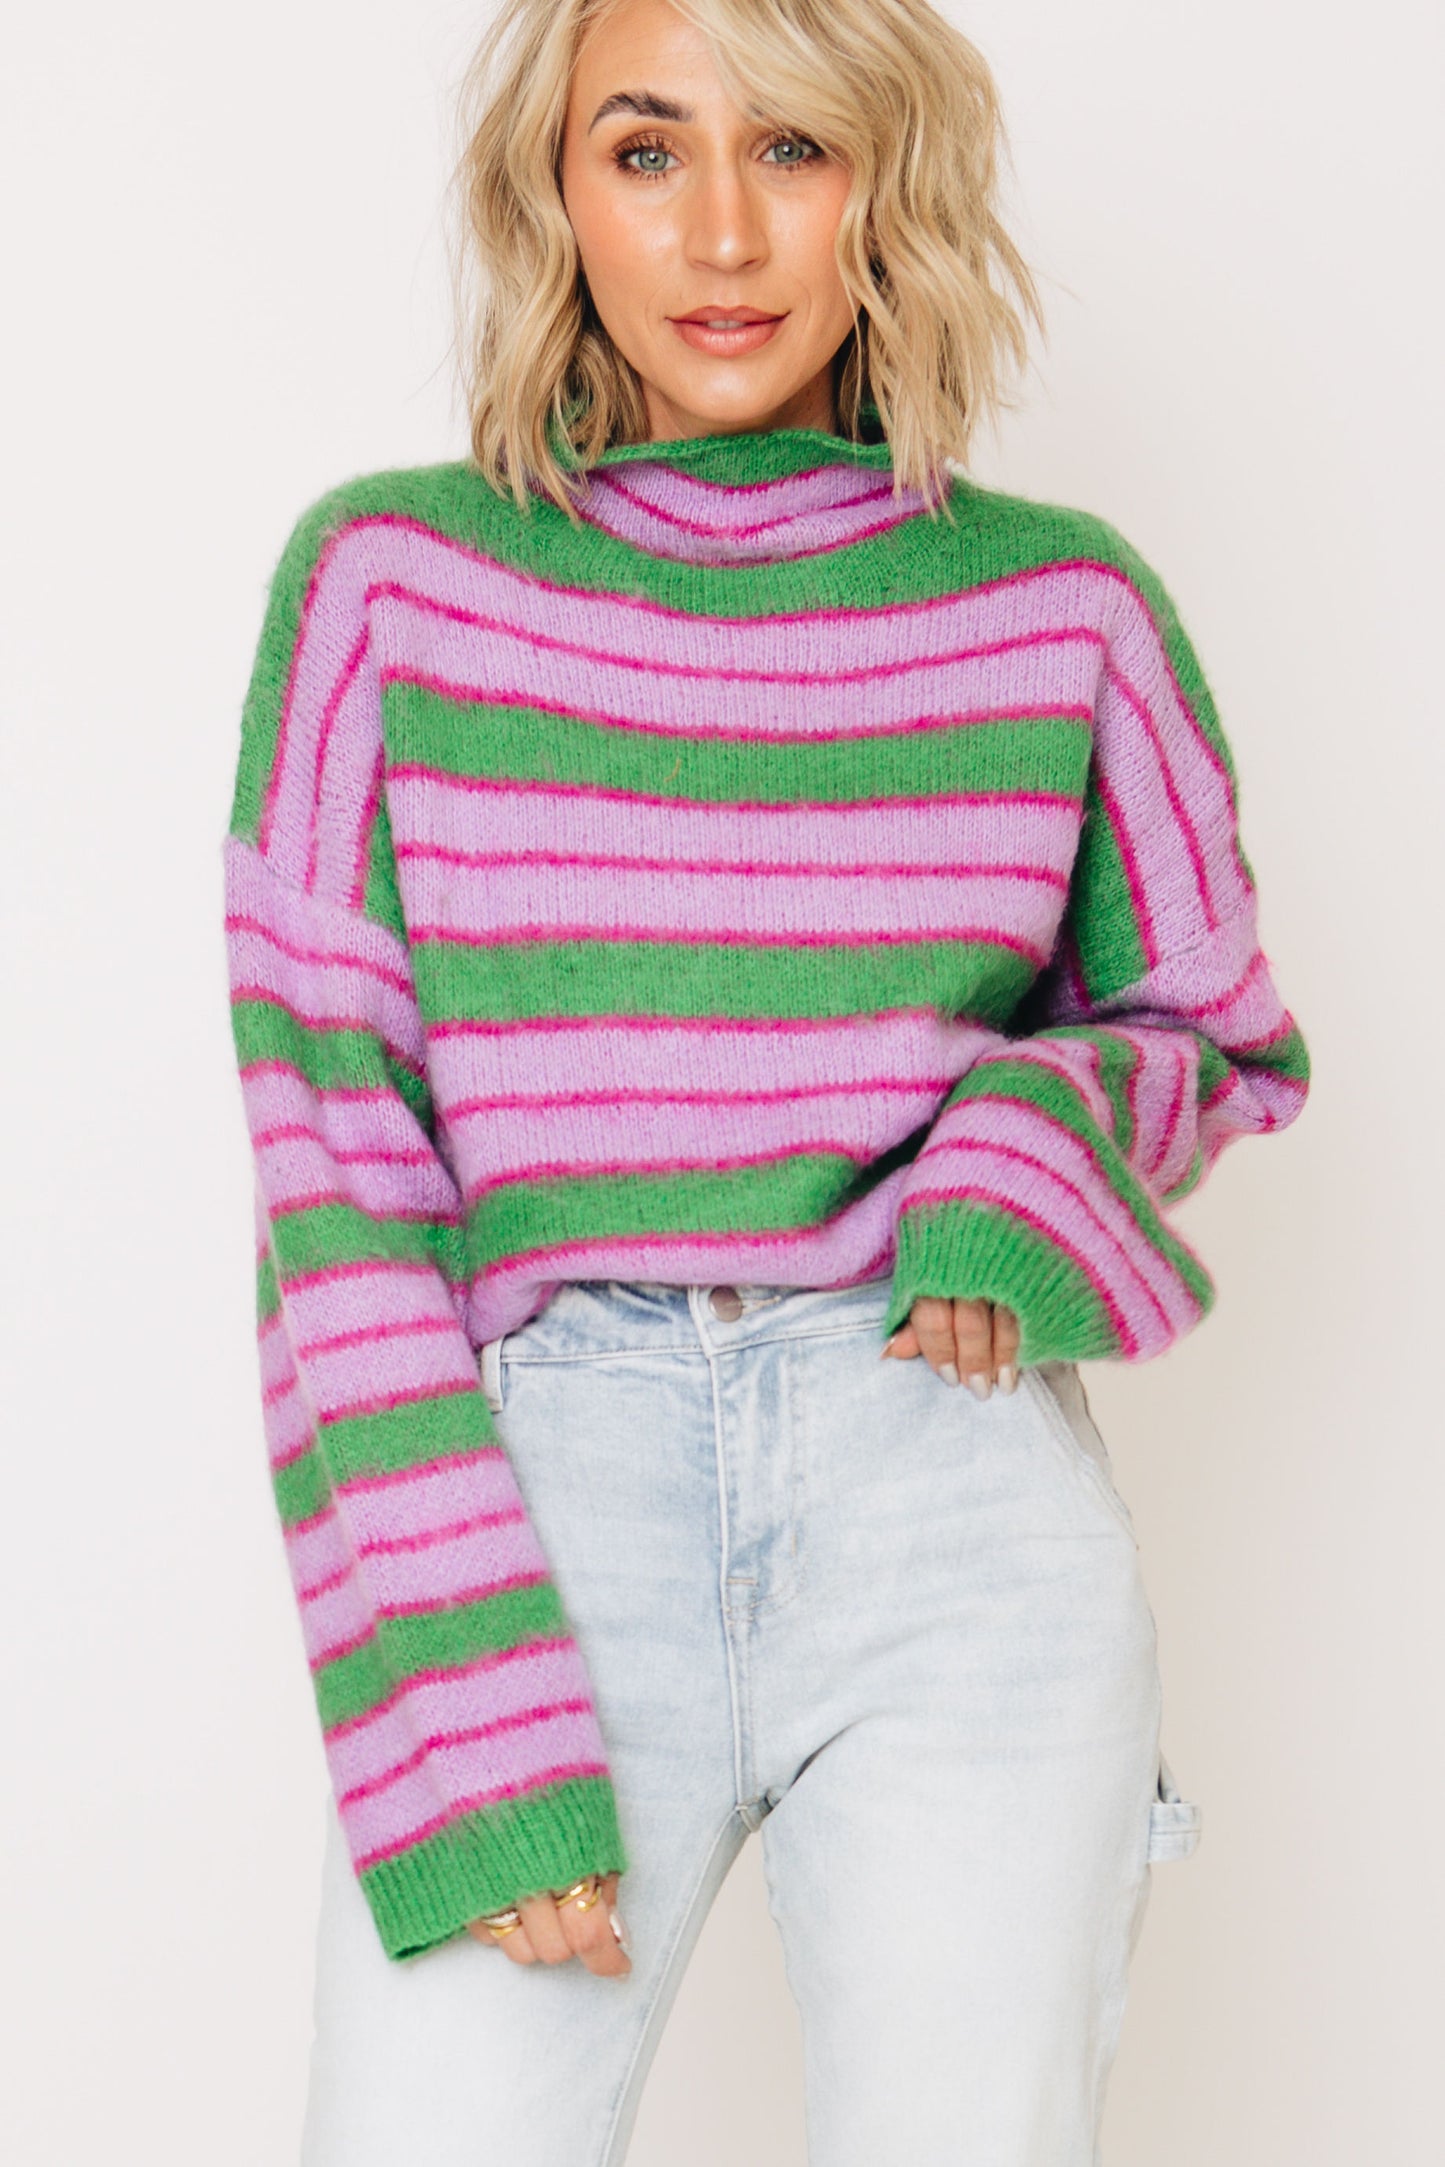 Lavender Fields Striped Turtleneck Sweater (S-L)